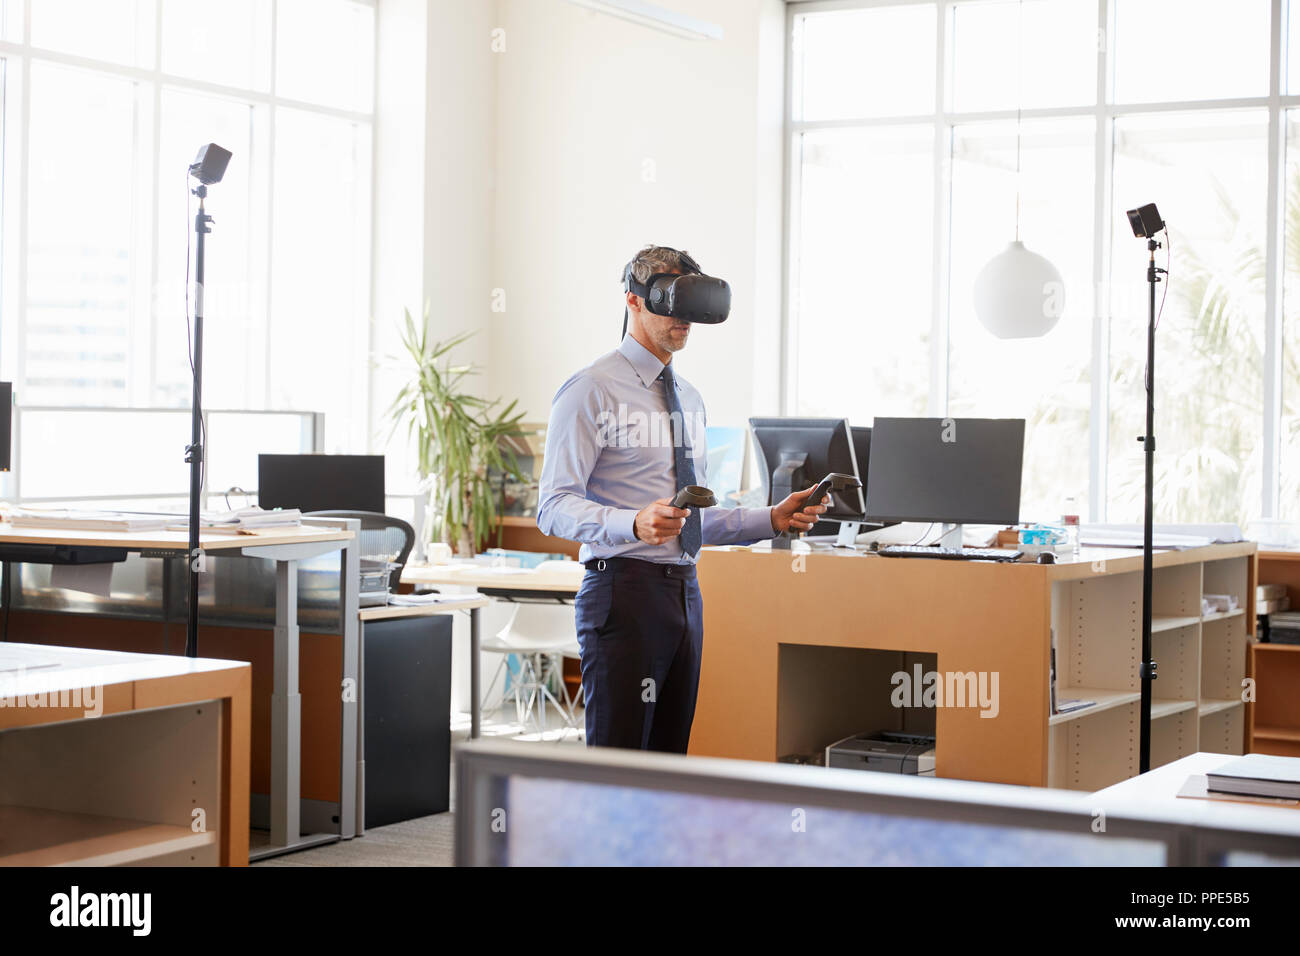 Portrait de la technologie VR dans un bureau, vue latérale Banque D'Images